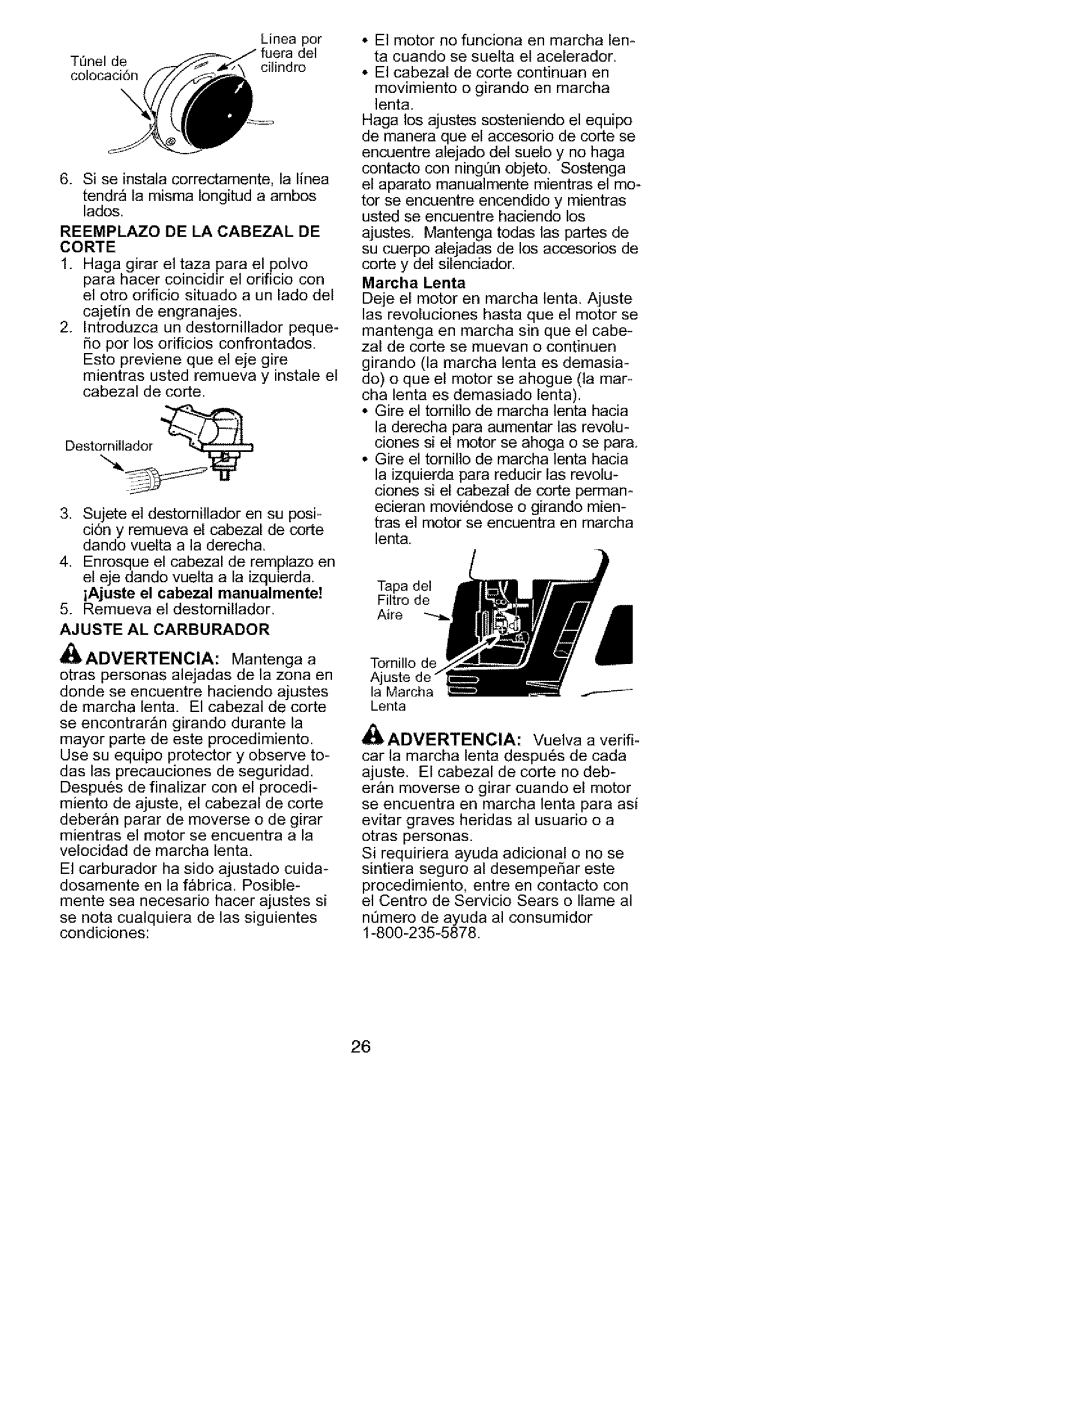 Craftsman 358.79558 instruction manual Reemplazo De La Cabezal De Corte, Ajuste Al Carburador, Marcha Lenta, lk ADVERTENCIA 